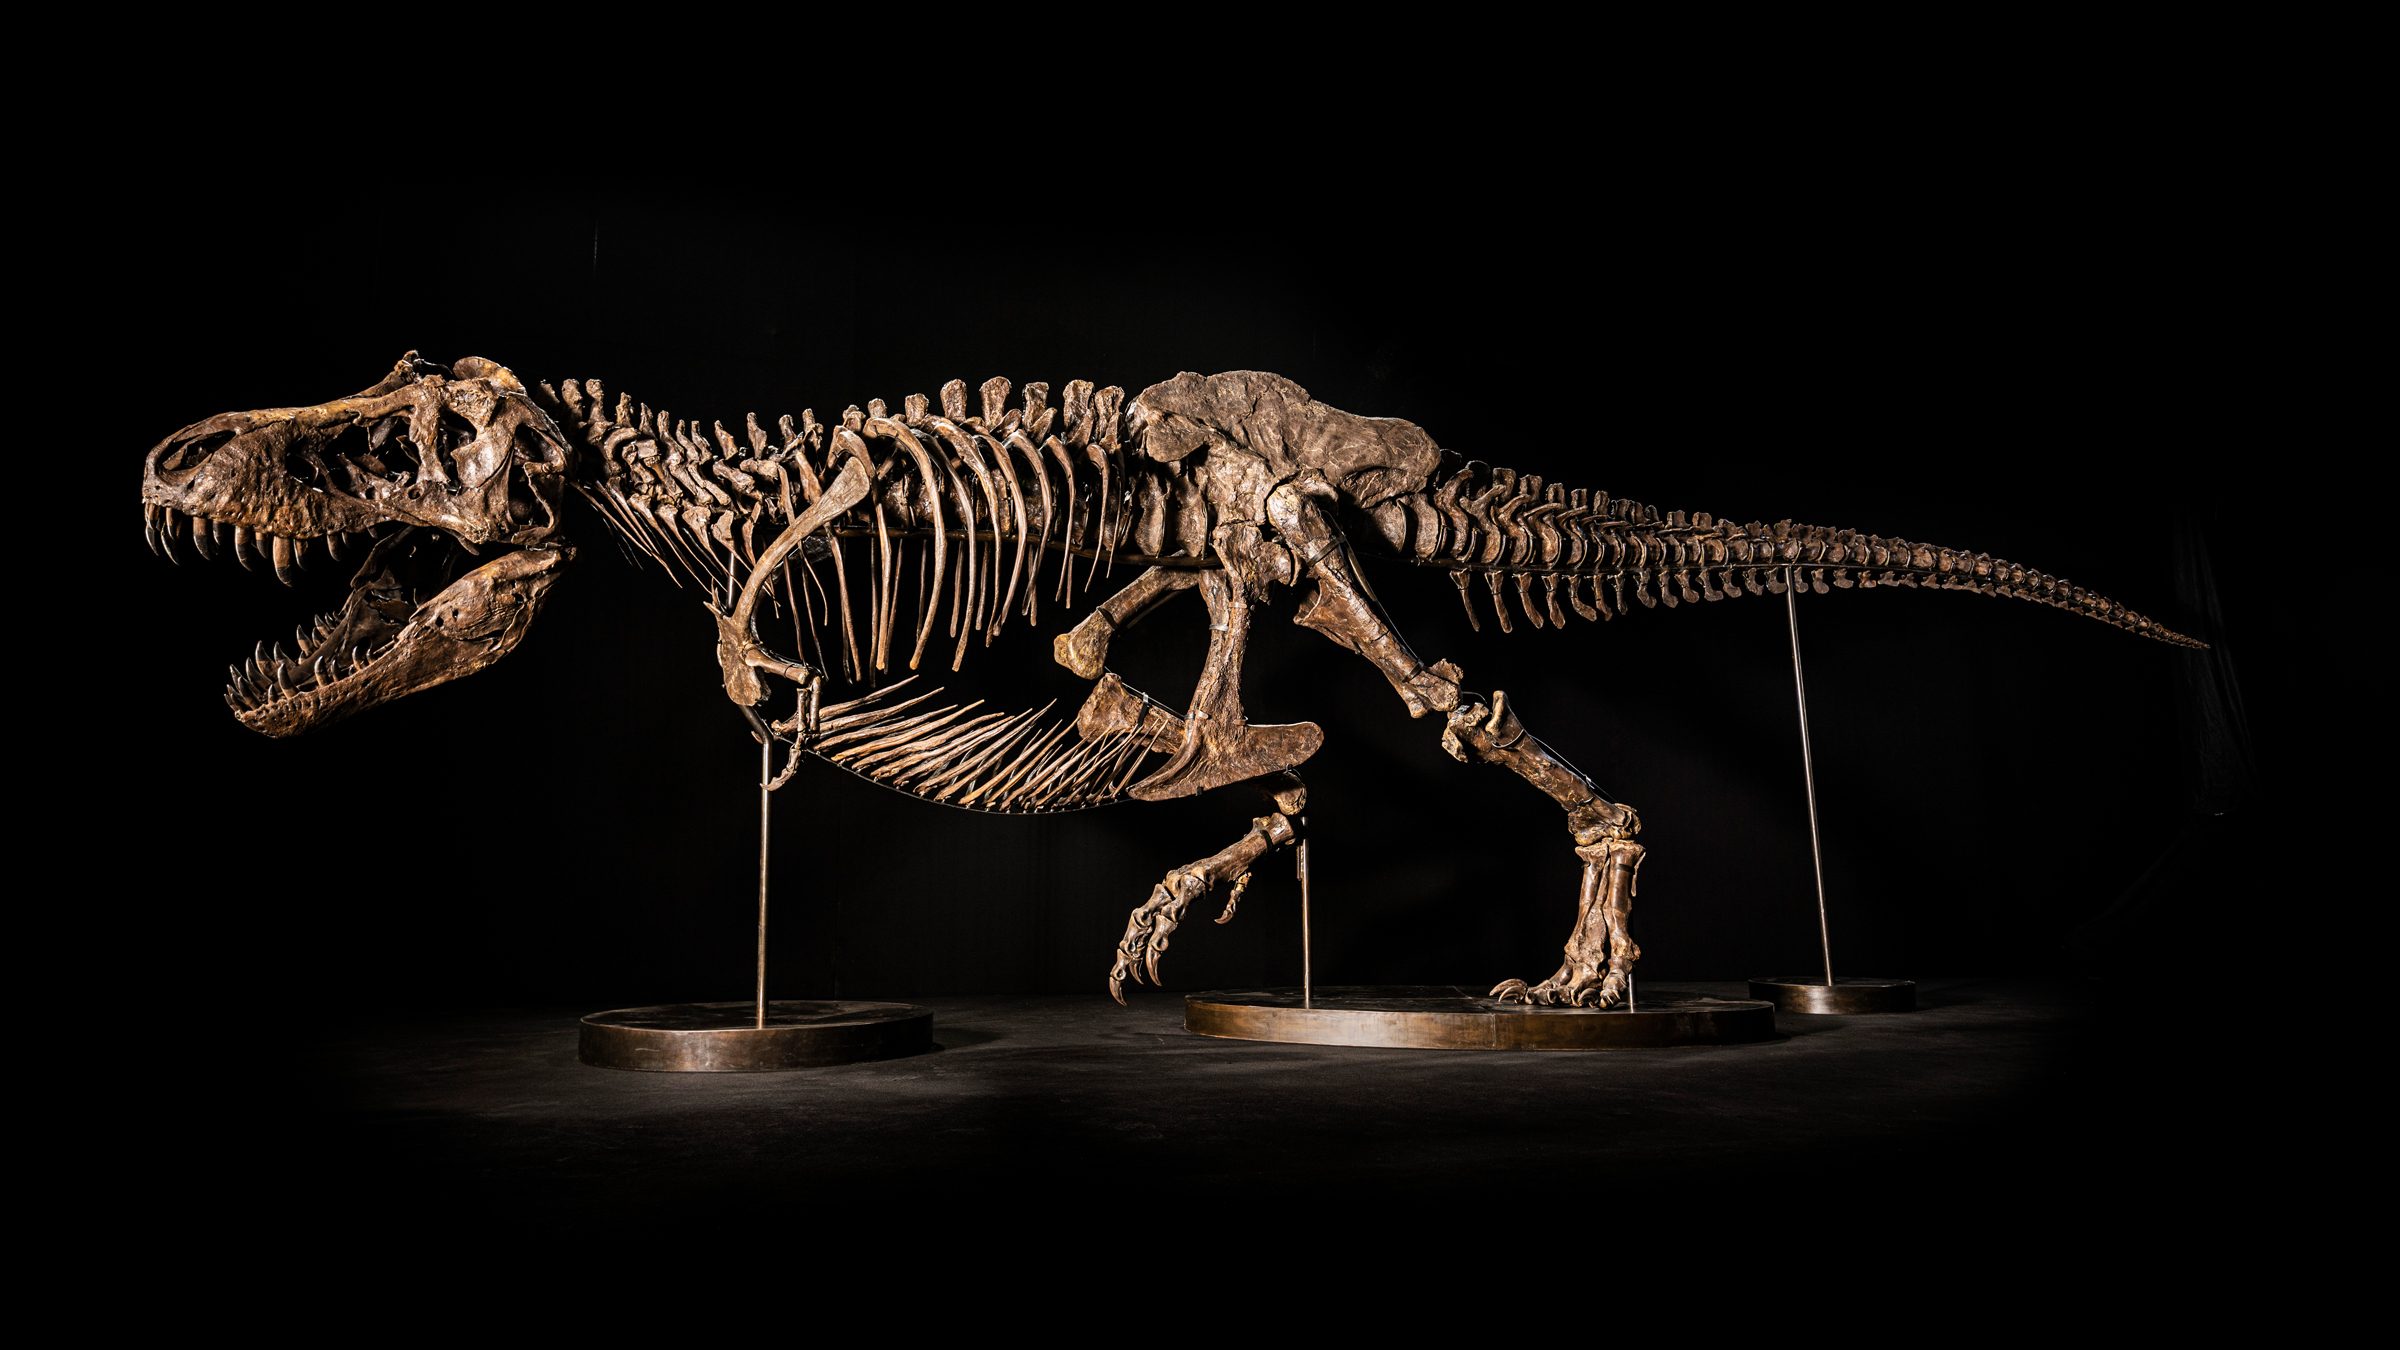 Shen est le premier T. rex à être mis aux enchères en Asie © Christie's Images Ltd